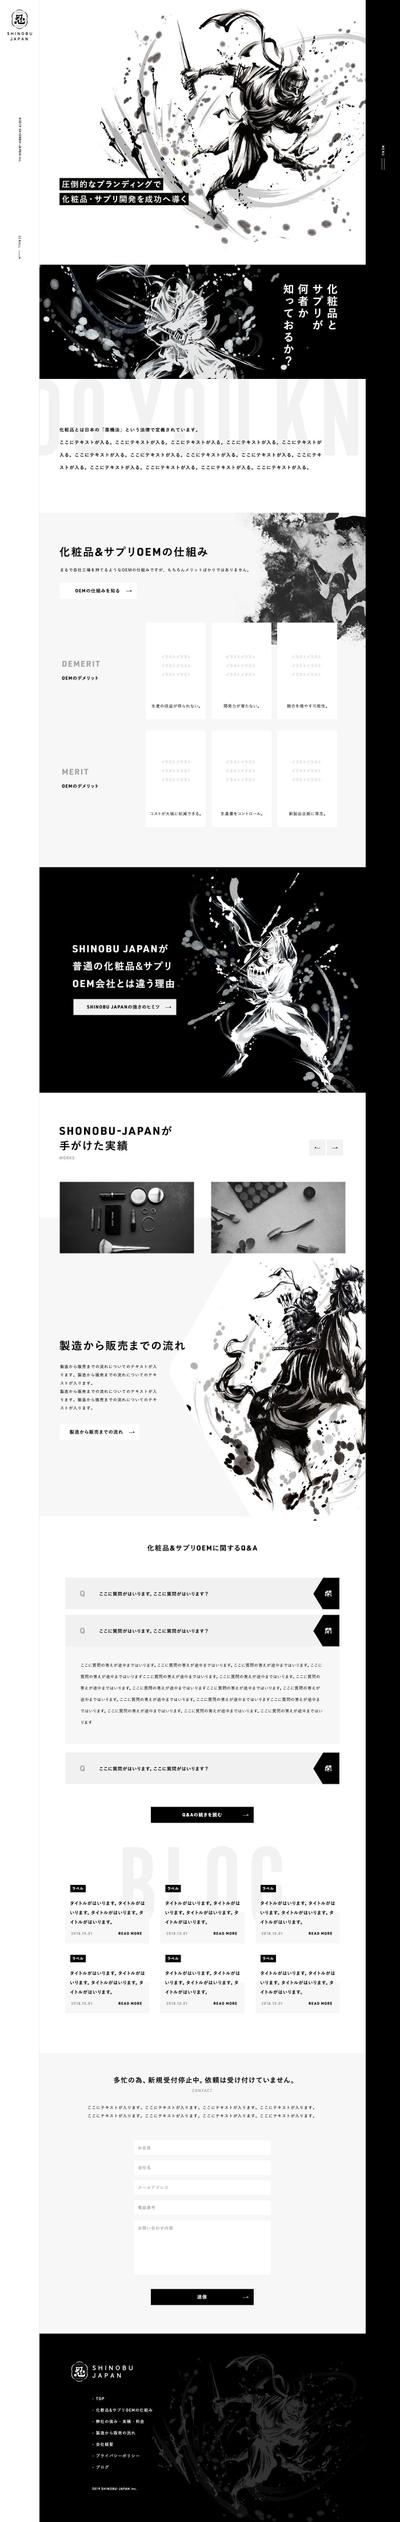 株式会社shiNobu-JAPAN様のウェブサイト制作